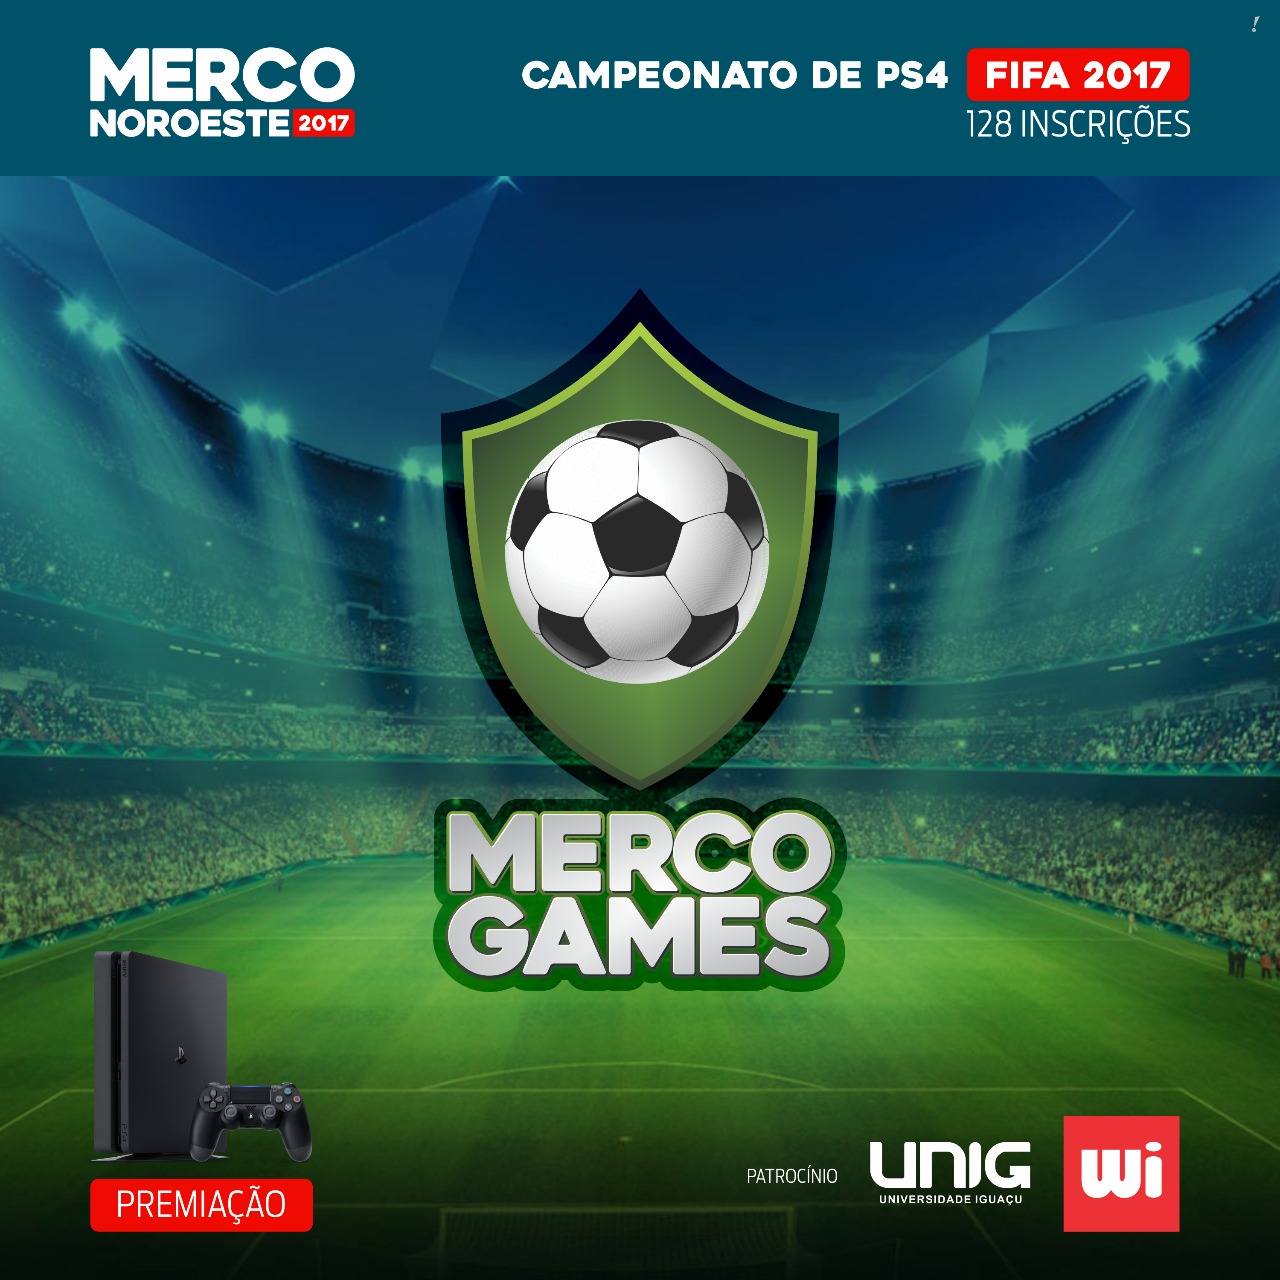 Campeonato de Game FIFA 17 – PS4 será realizado durante a Merco Noroeste